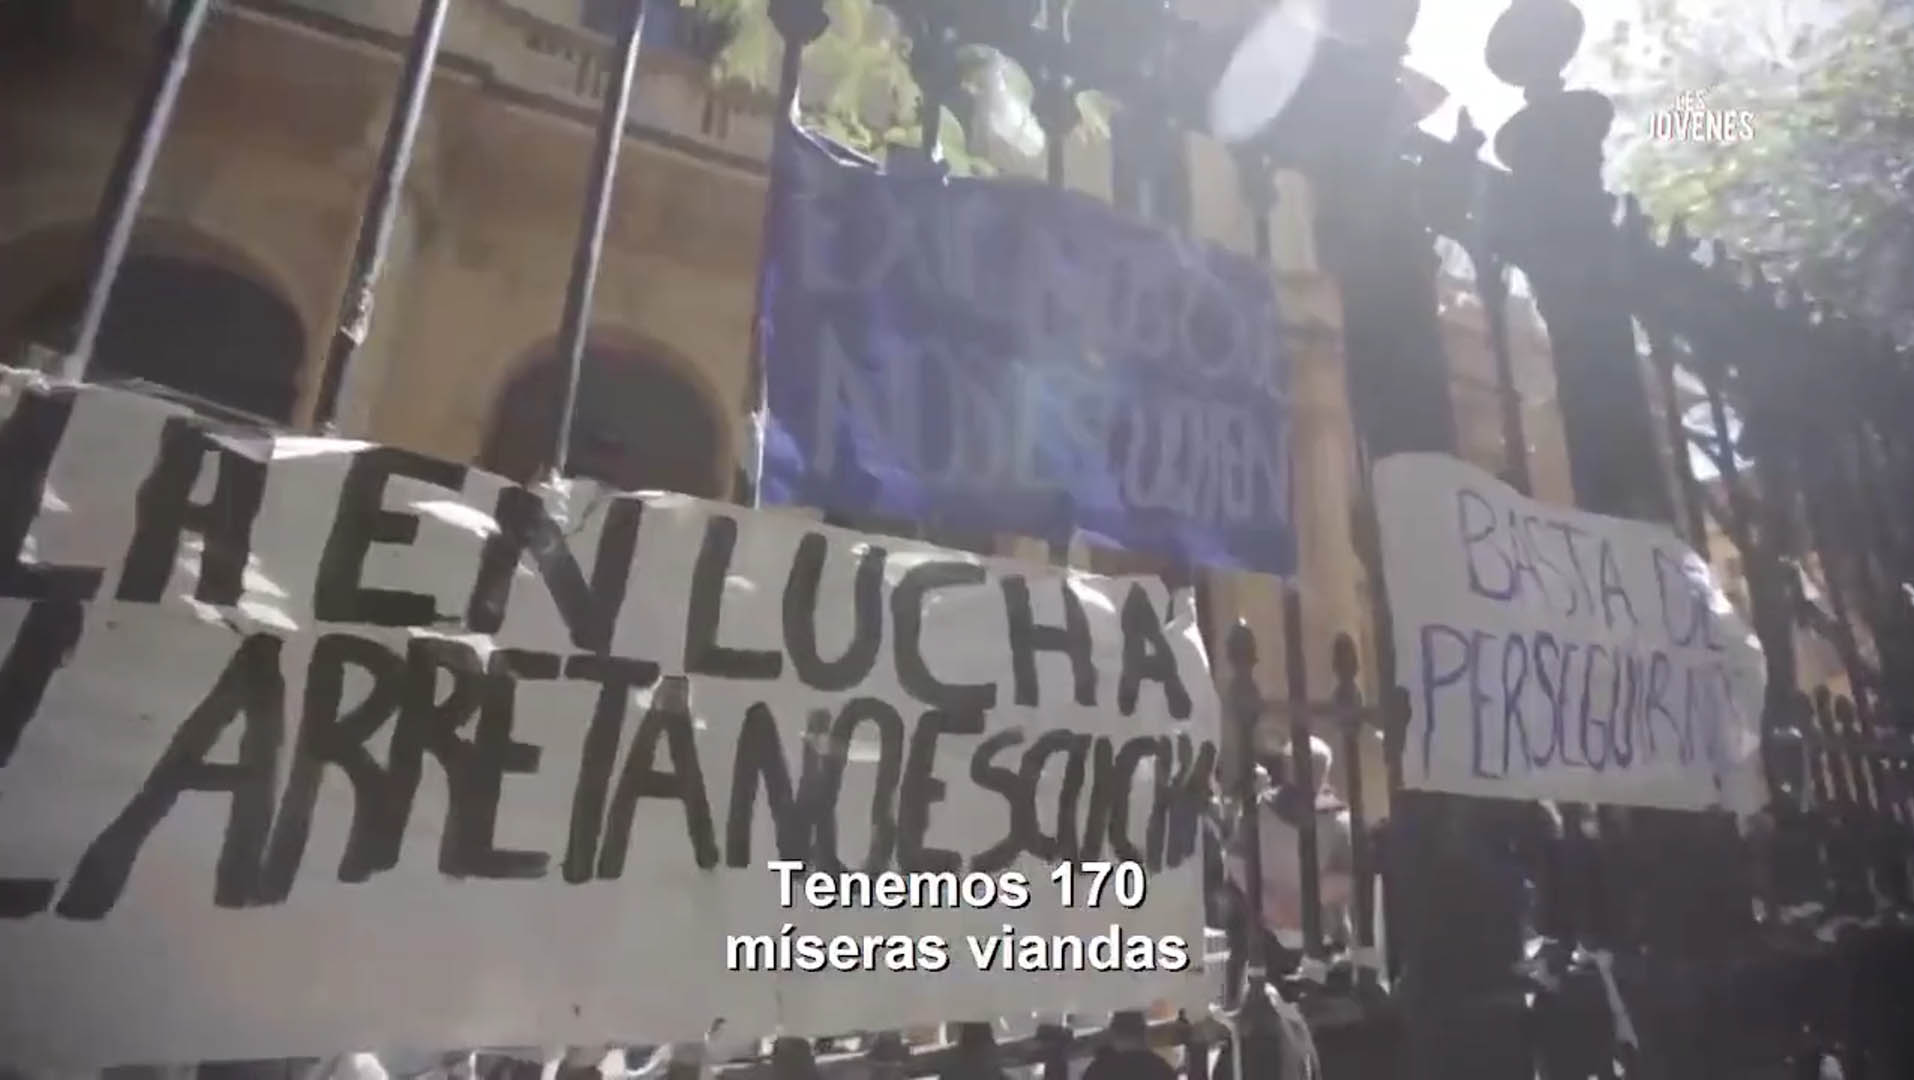 Estudiantes en lucha porque Larreta y Acuña no escuchan